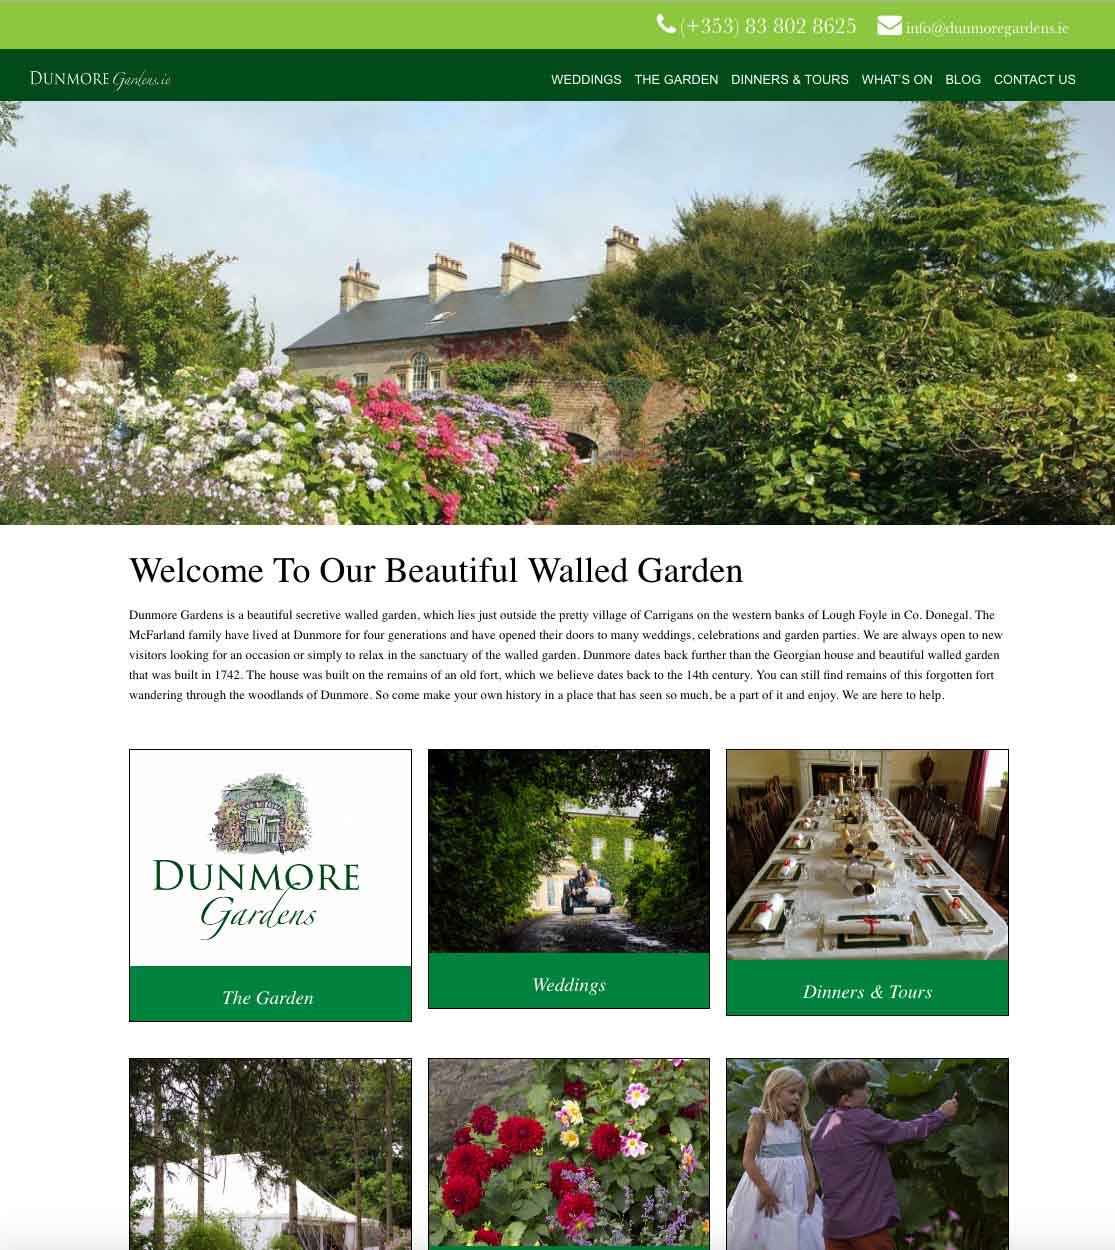 Dunmore Gardens website design